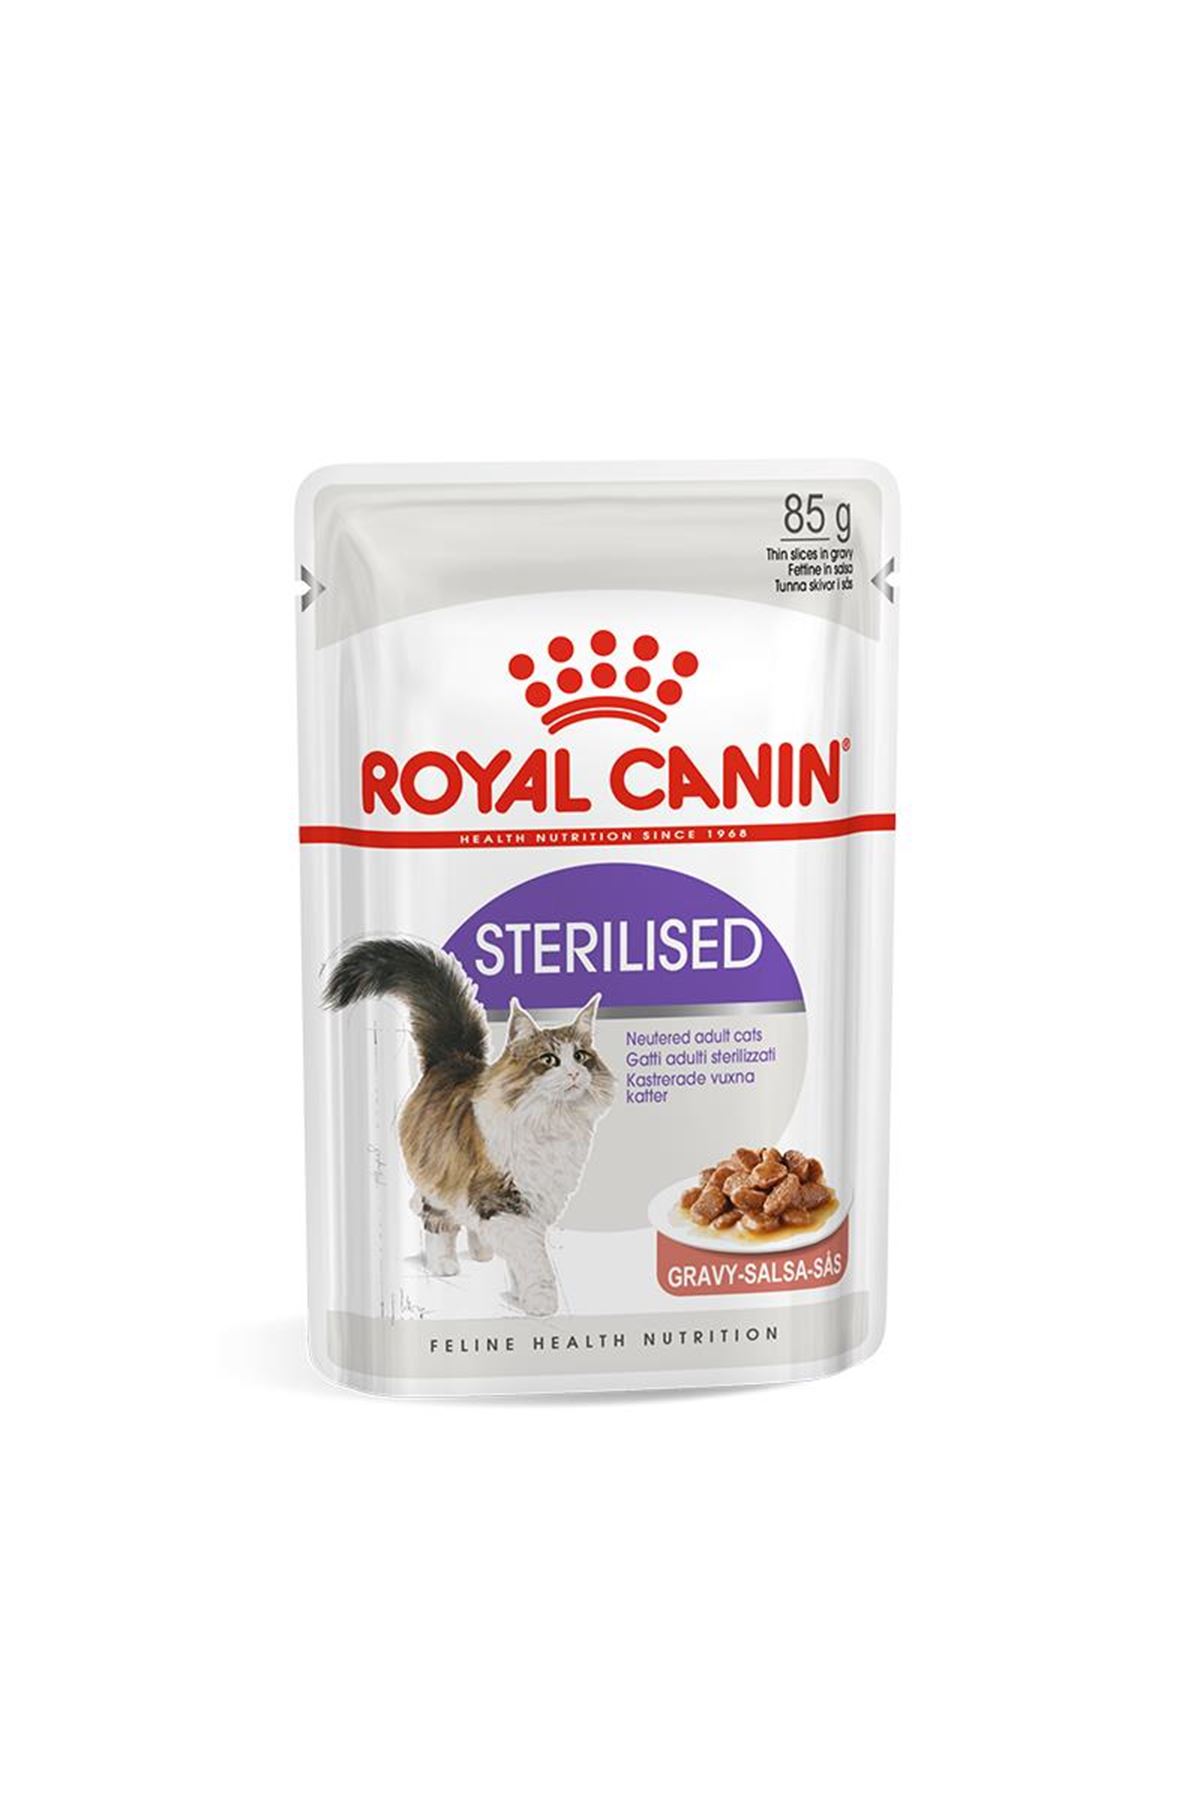 Royal Canin Sterilised Gravy Kısırlaştırılmış Yetişkin Kedi Konservesi 85gr